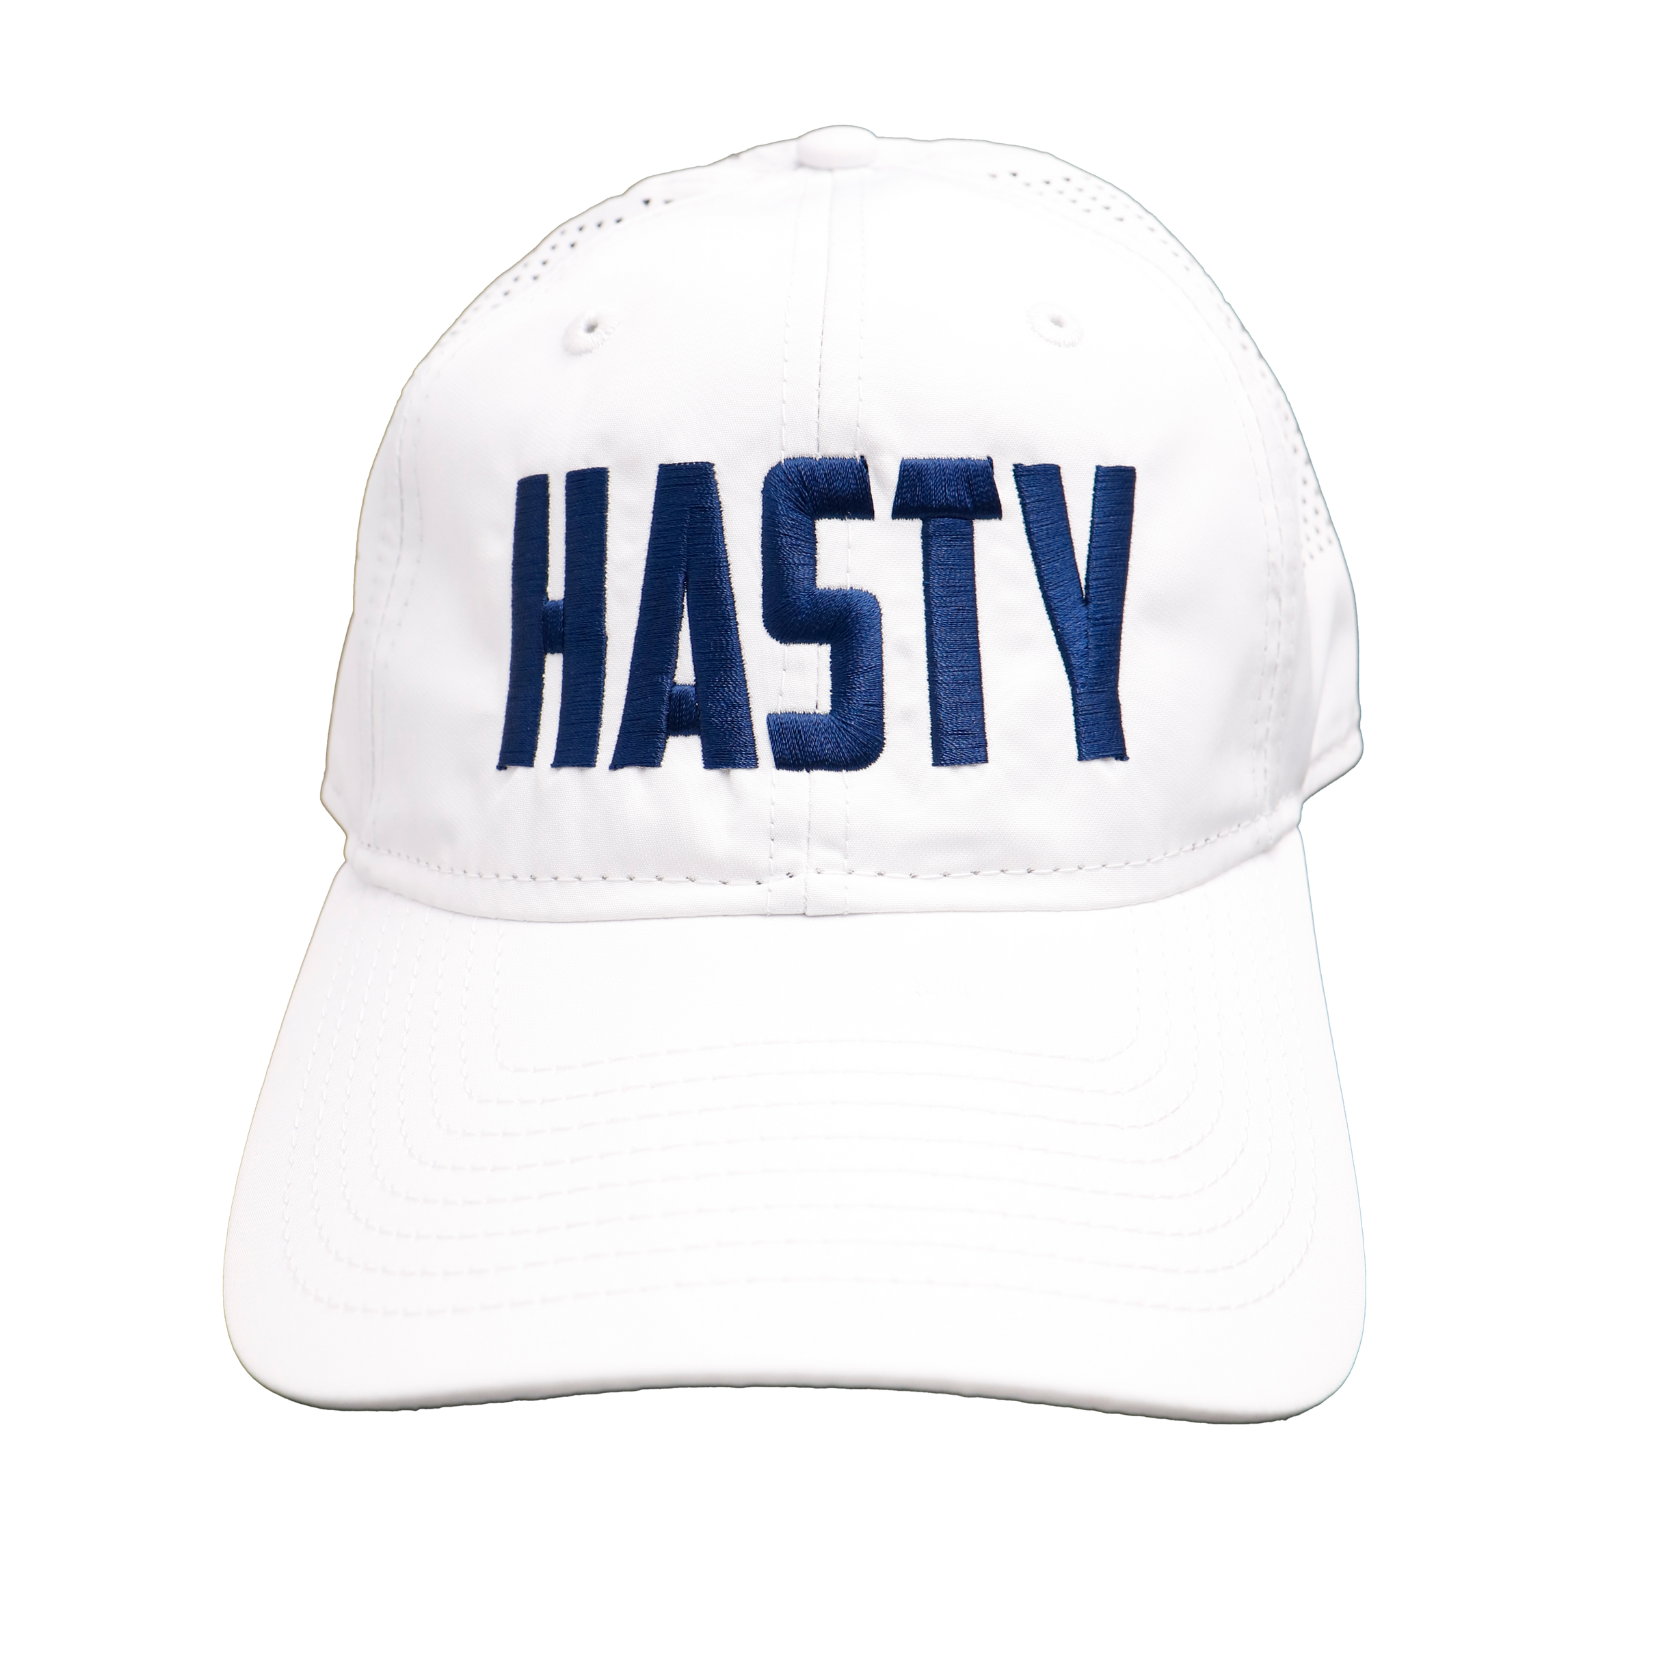 NEW** Hasty Bake "HASTY" New Era Hat Adult/Unisex - White